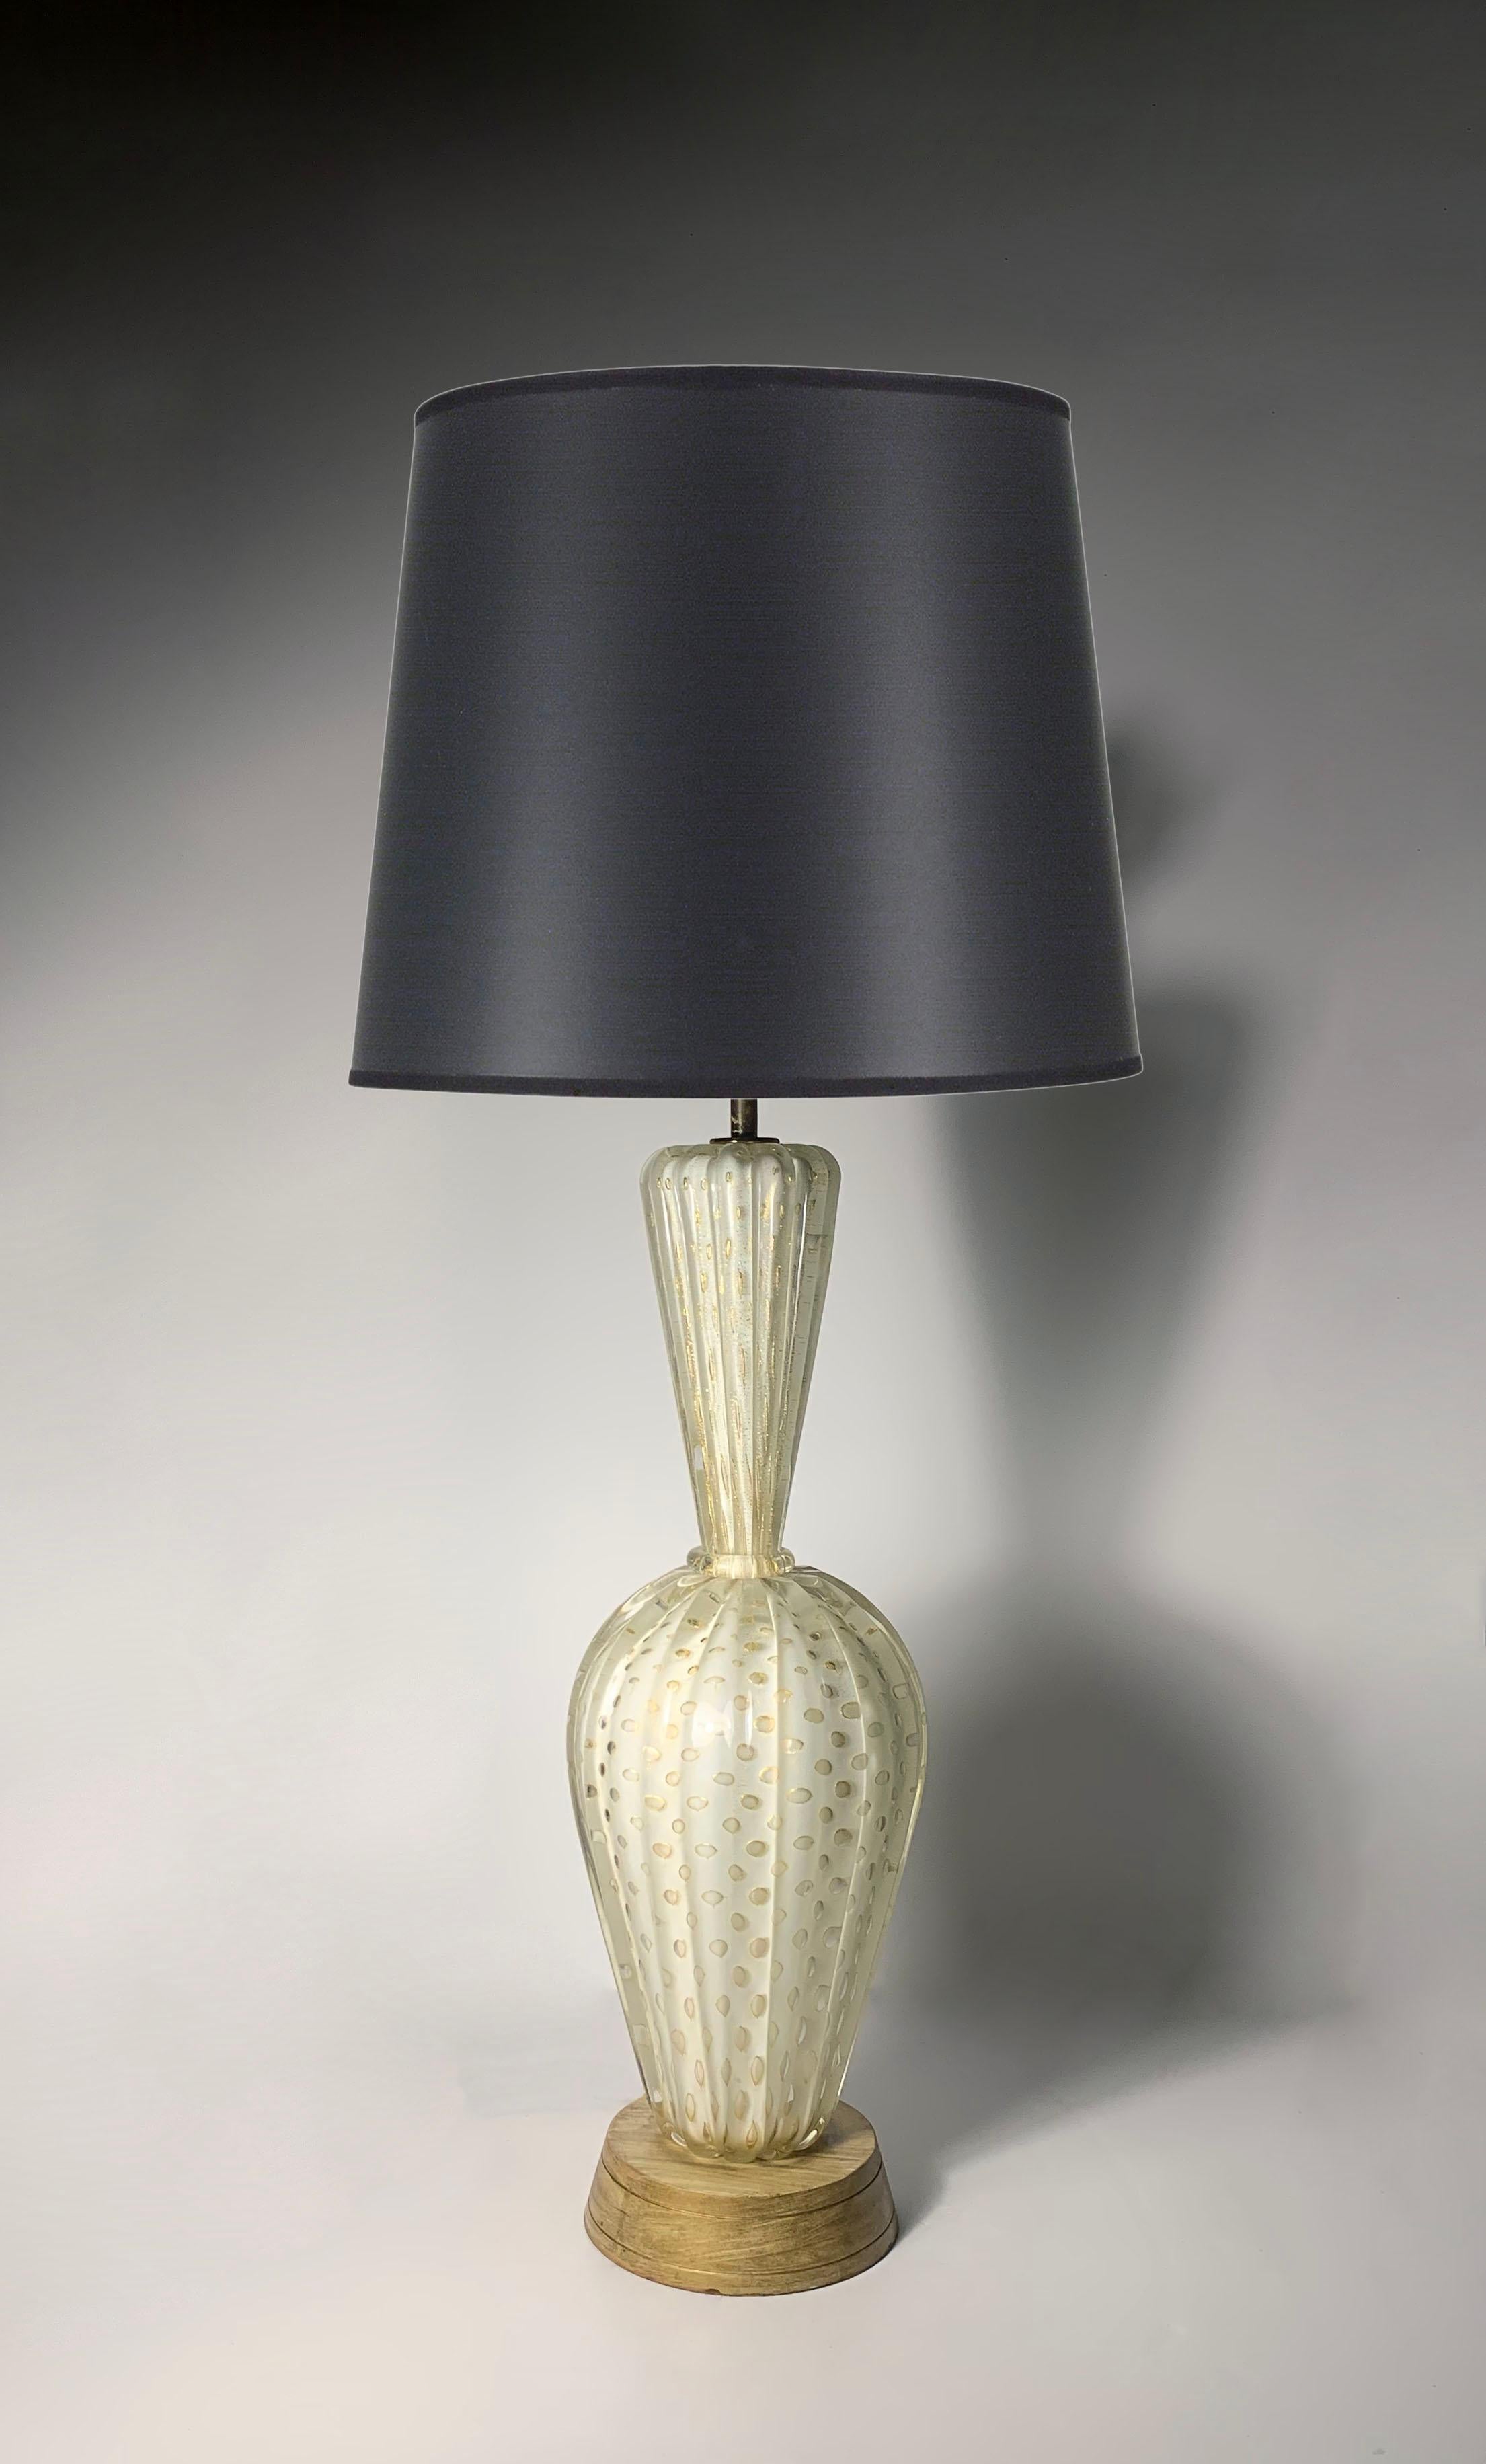 Barovier & Toso Murano Glass Lamp

28